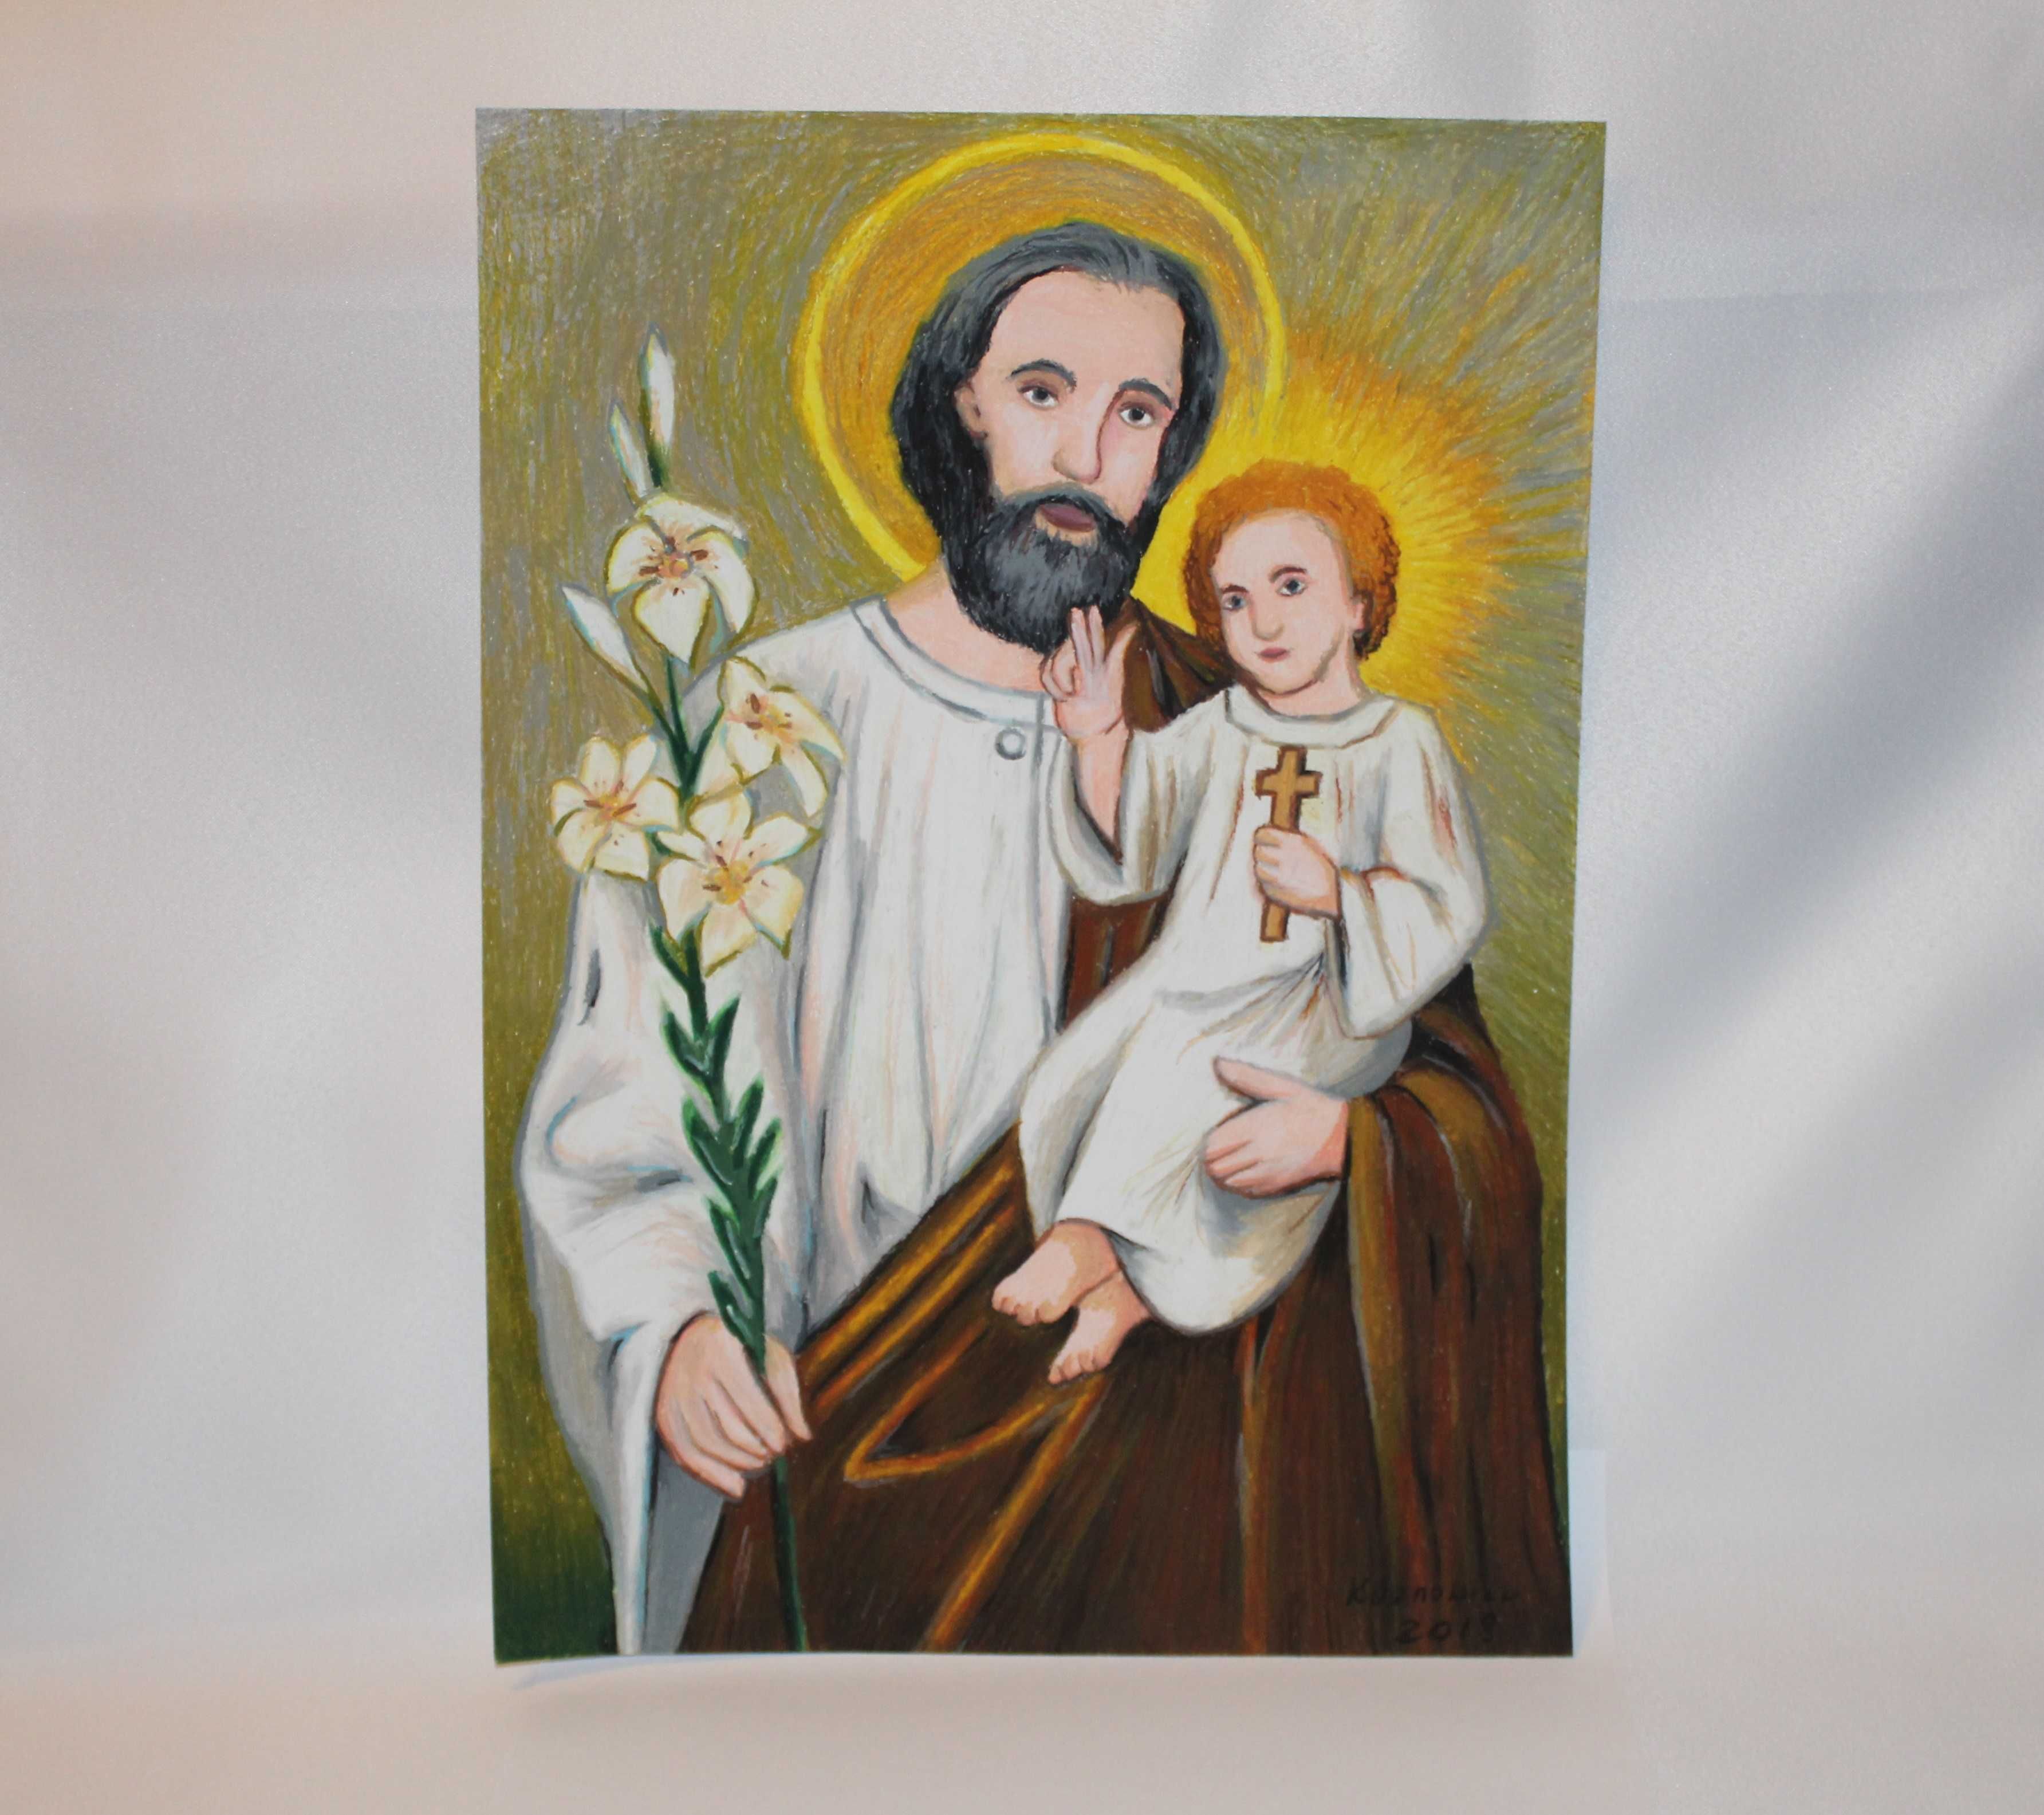 obraz religijny pastele olejne - święty Józef i dzieciątko Jezus